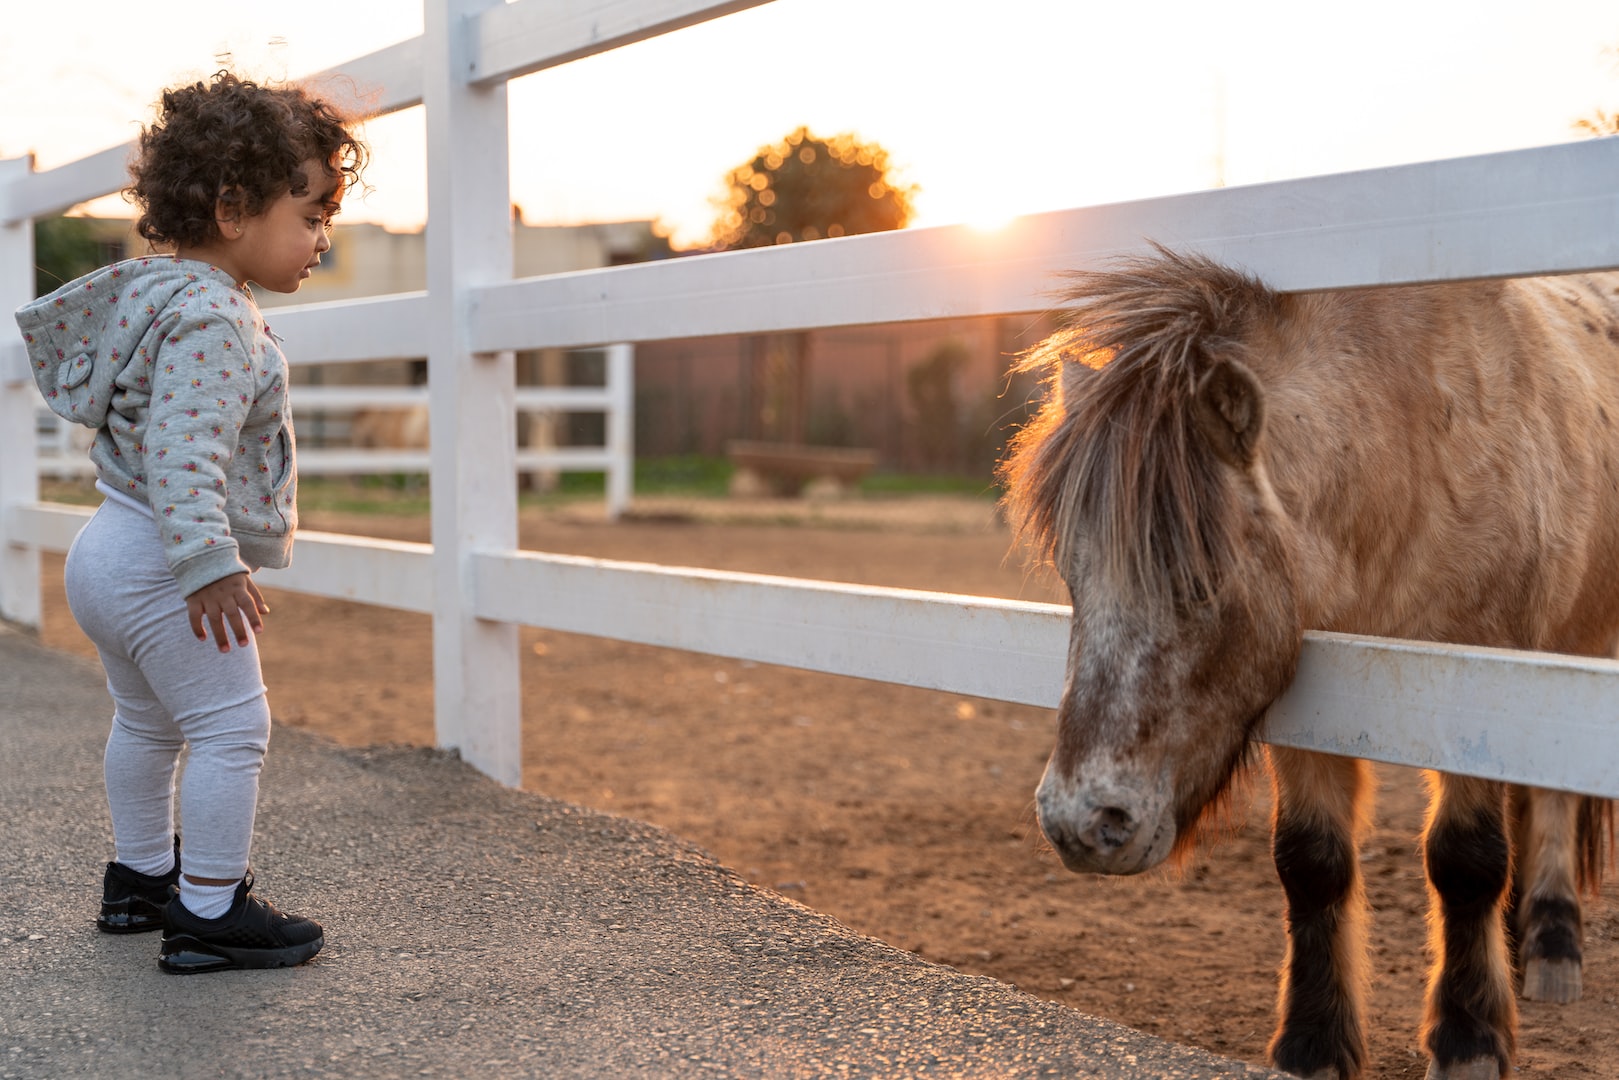 Le poney club permet aux jeunes enfants d'apprendre à connaître les poneys et les chevaux